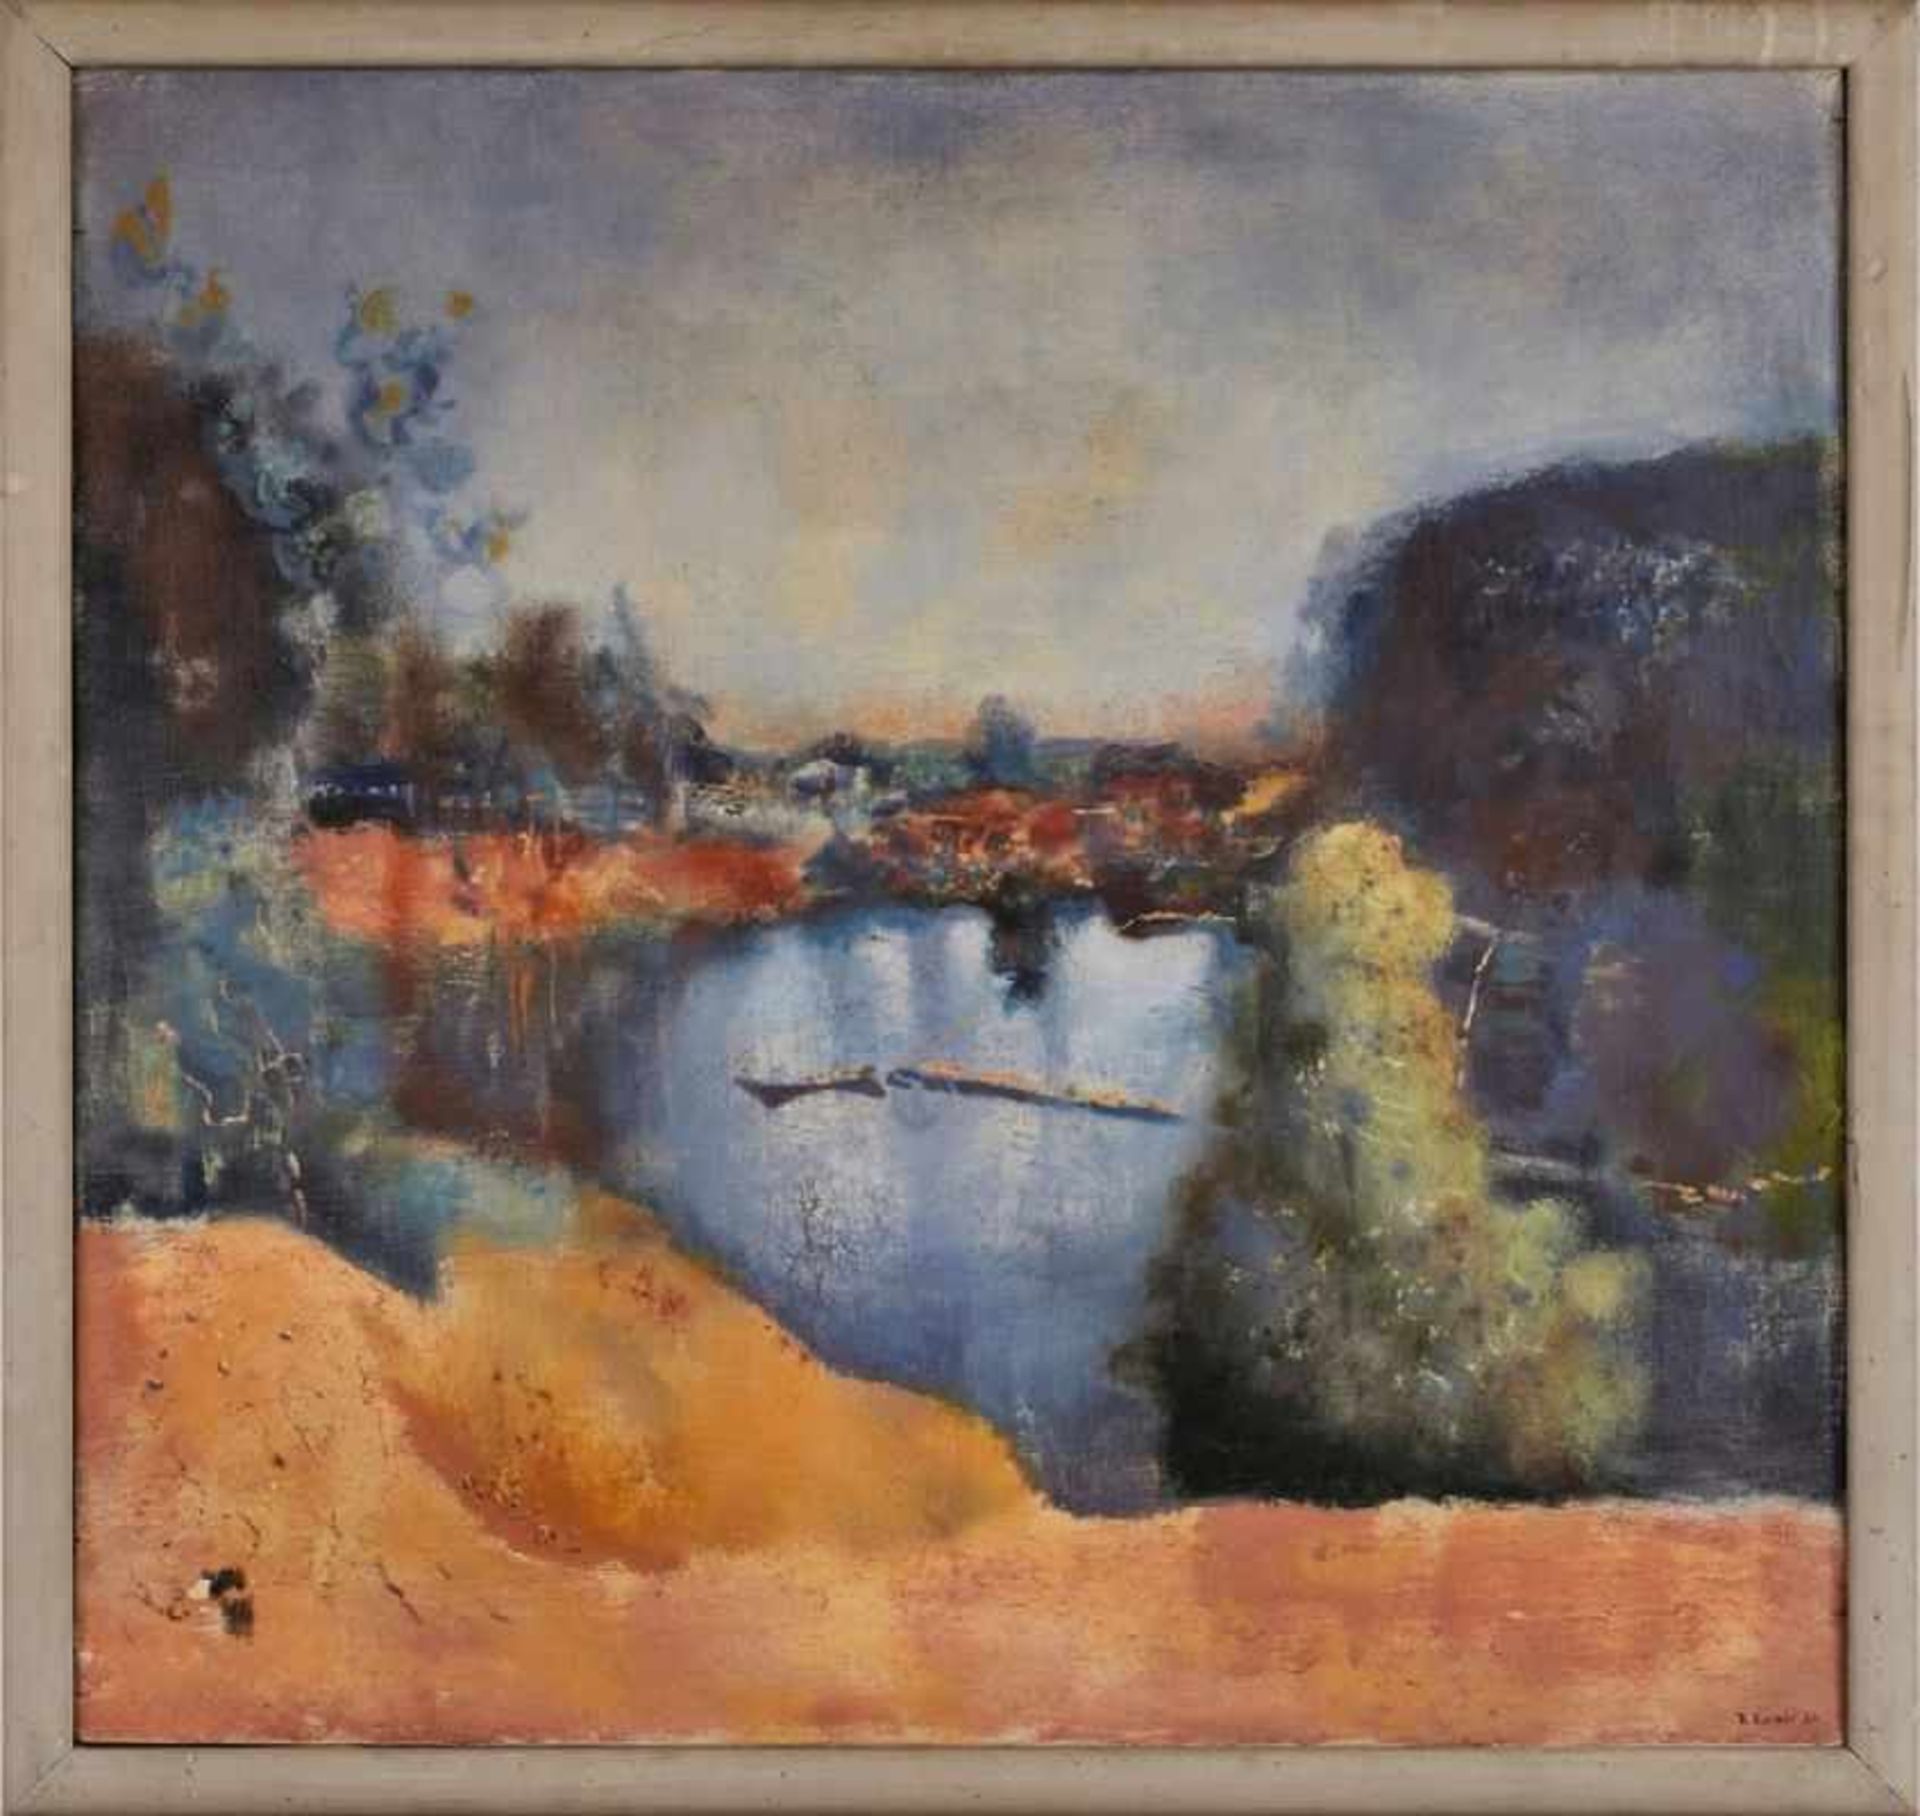 Gemälde Reinhold Ewald 1890 Hanau - 1974 Hanau 1906-07 an der Hanauer Zeichen-Akad. 1907-11 in